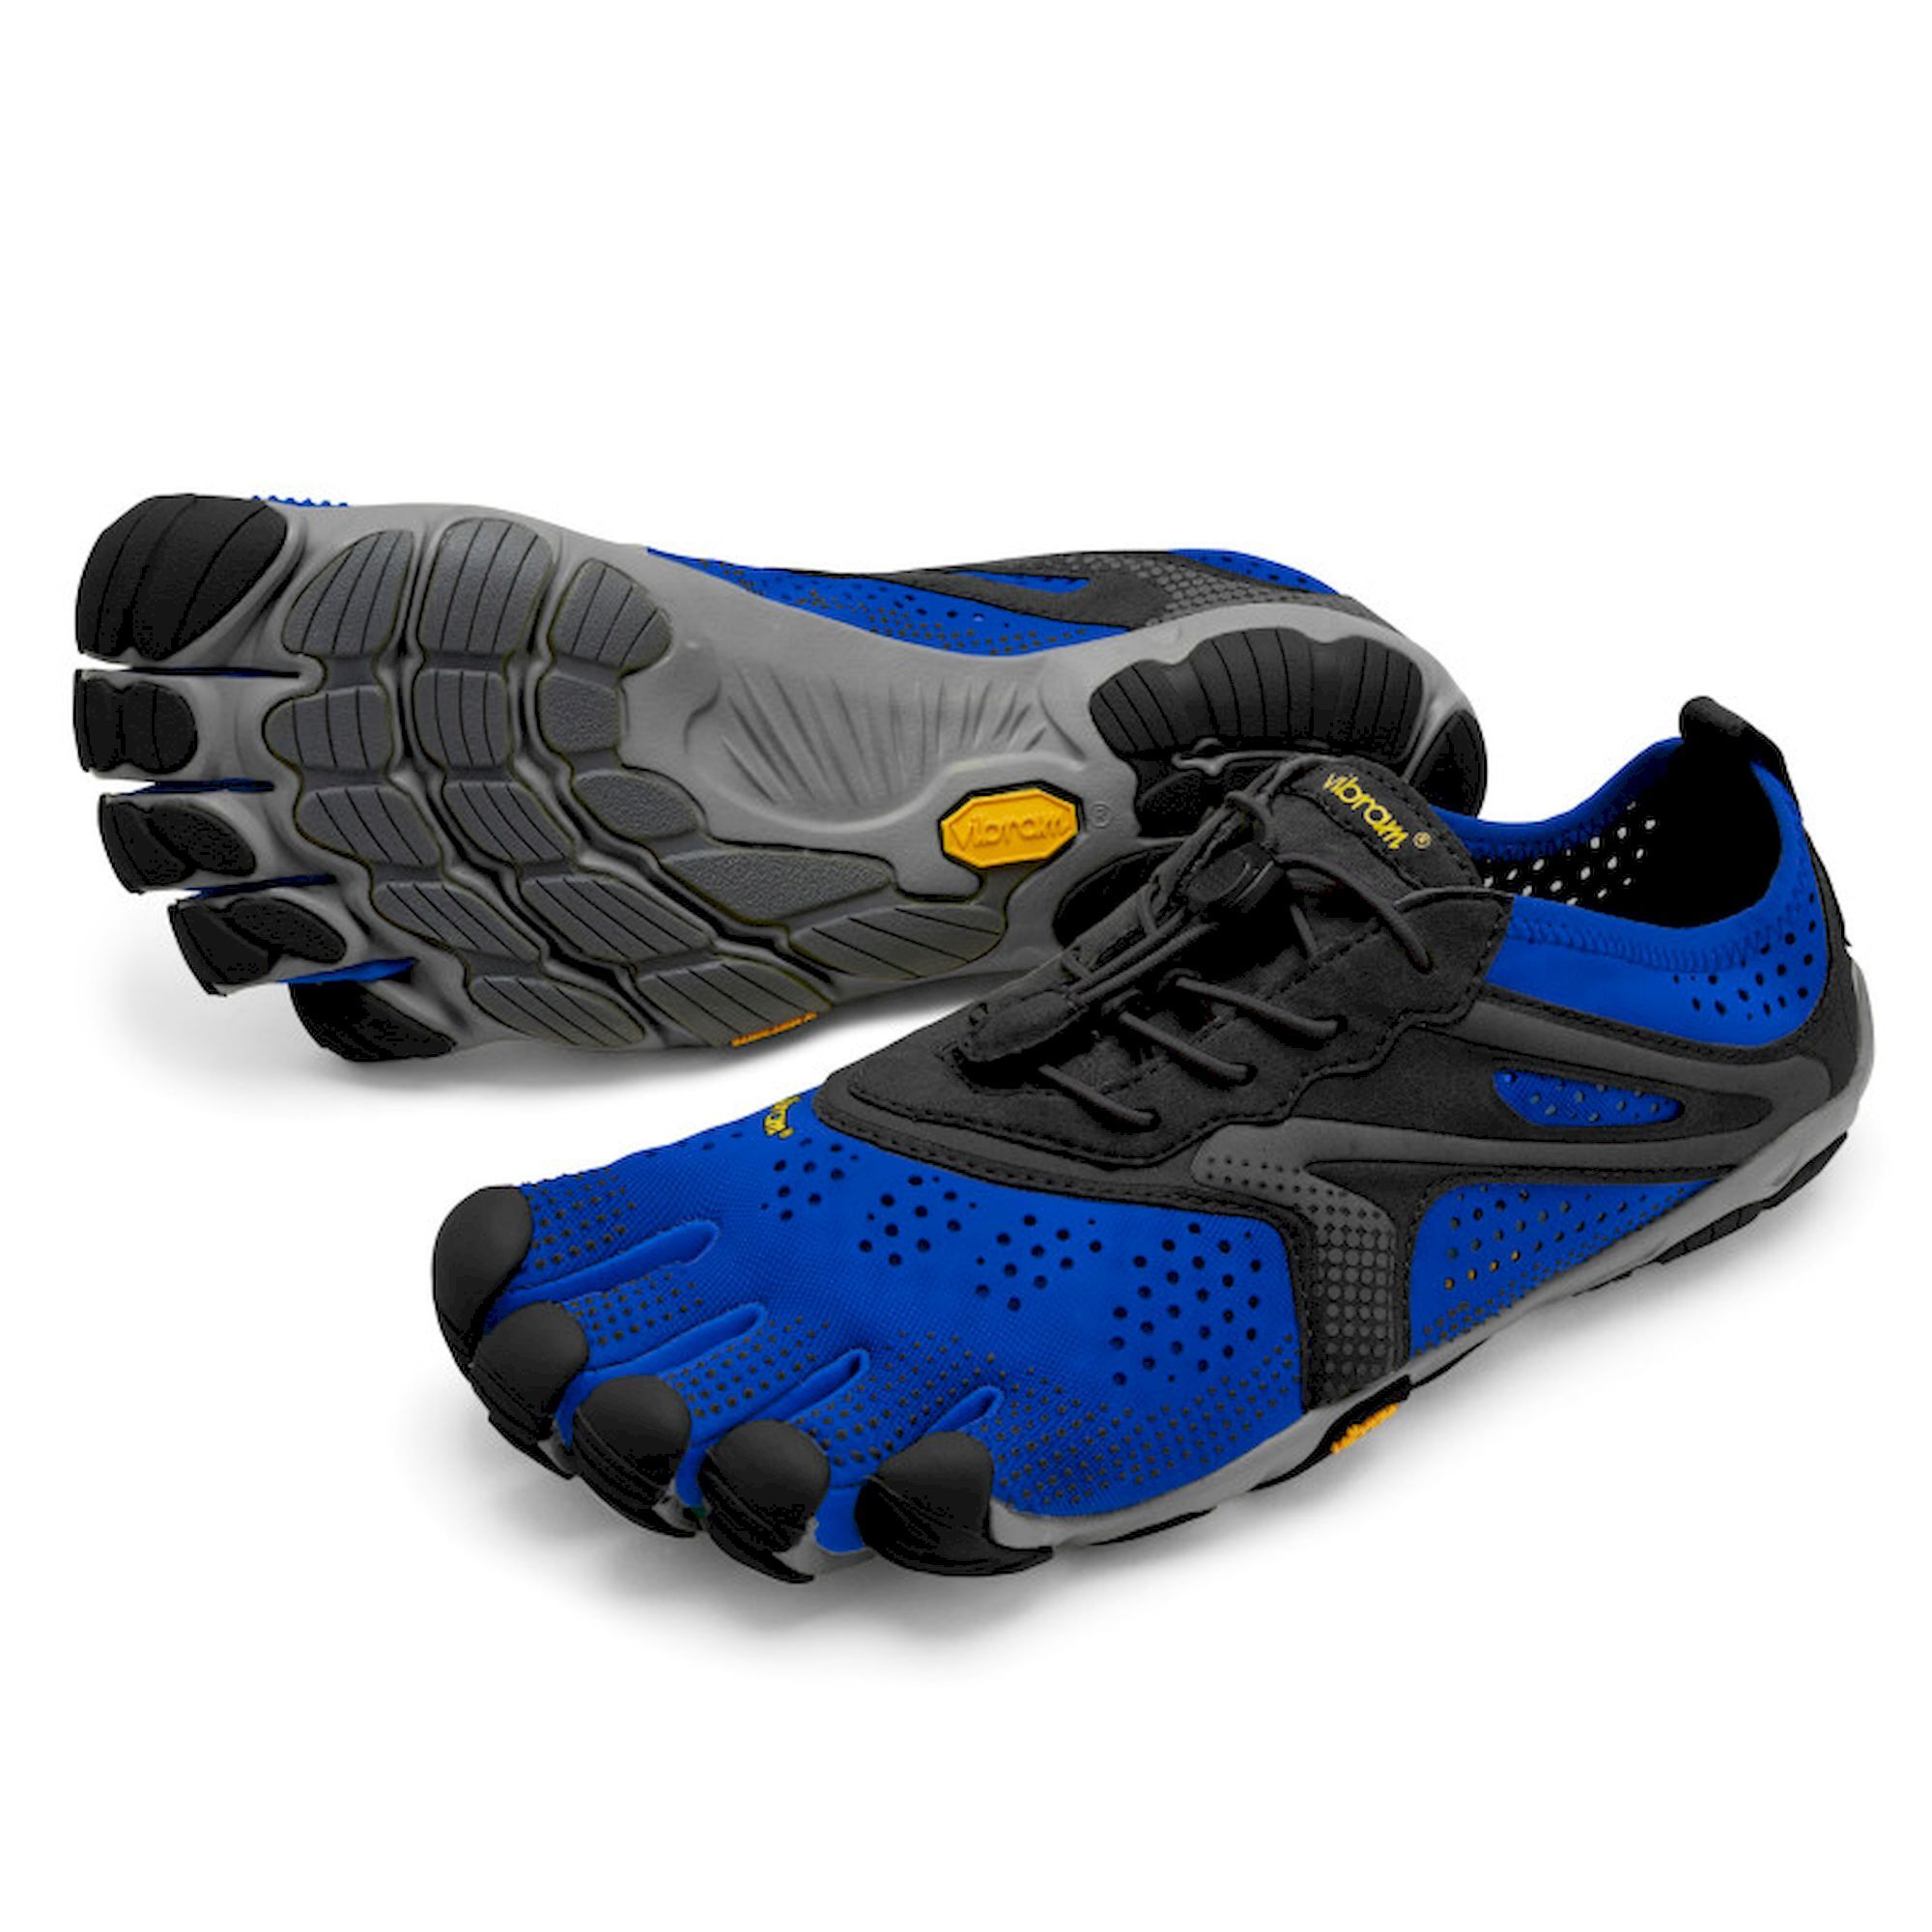 Vibram Five Fingers V-Run - Running shoes - Men's